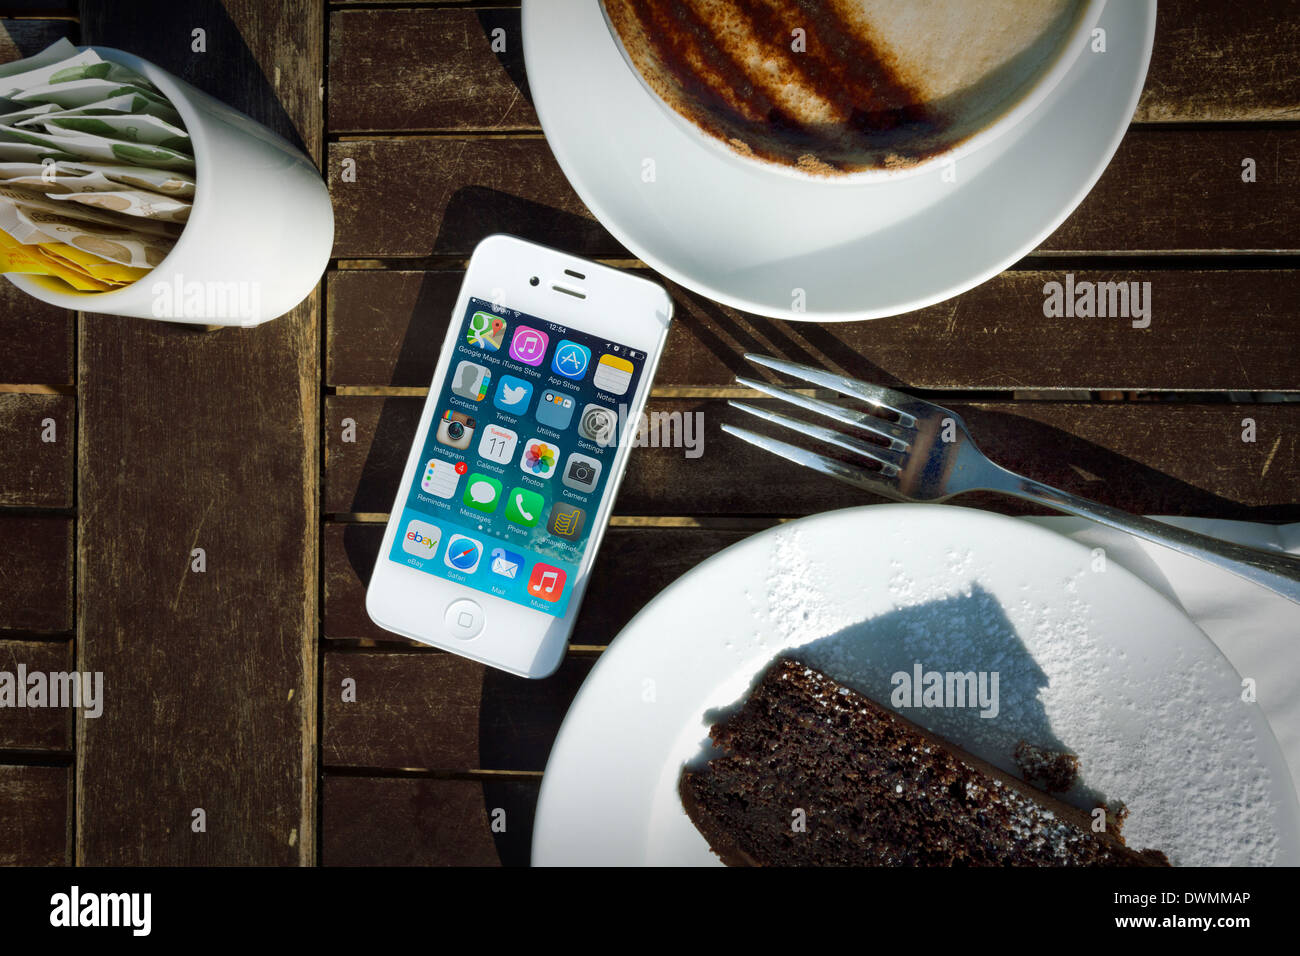 L'iPhone 4s sur la table avec un gâteau et du Cappuccino Banque D'Images